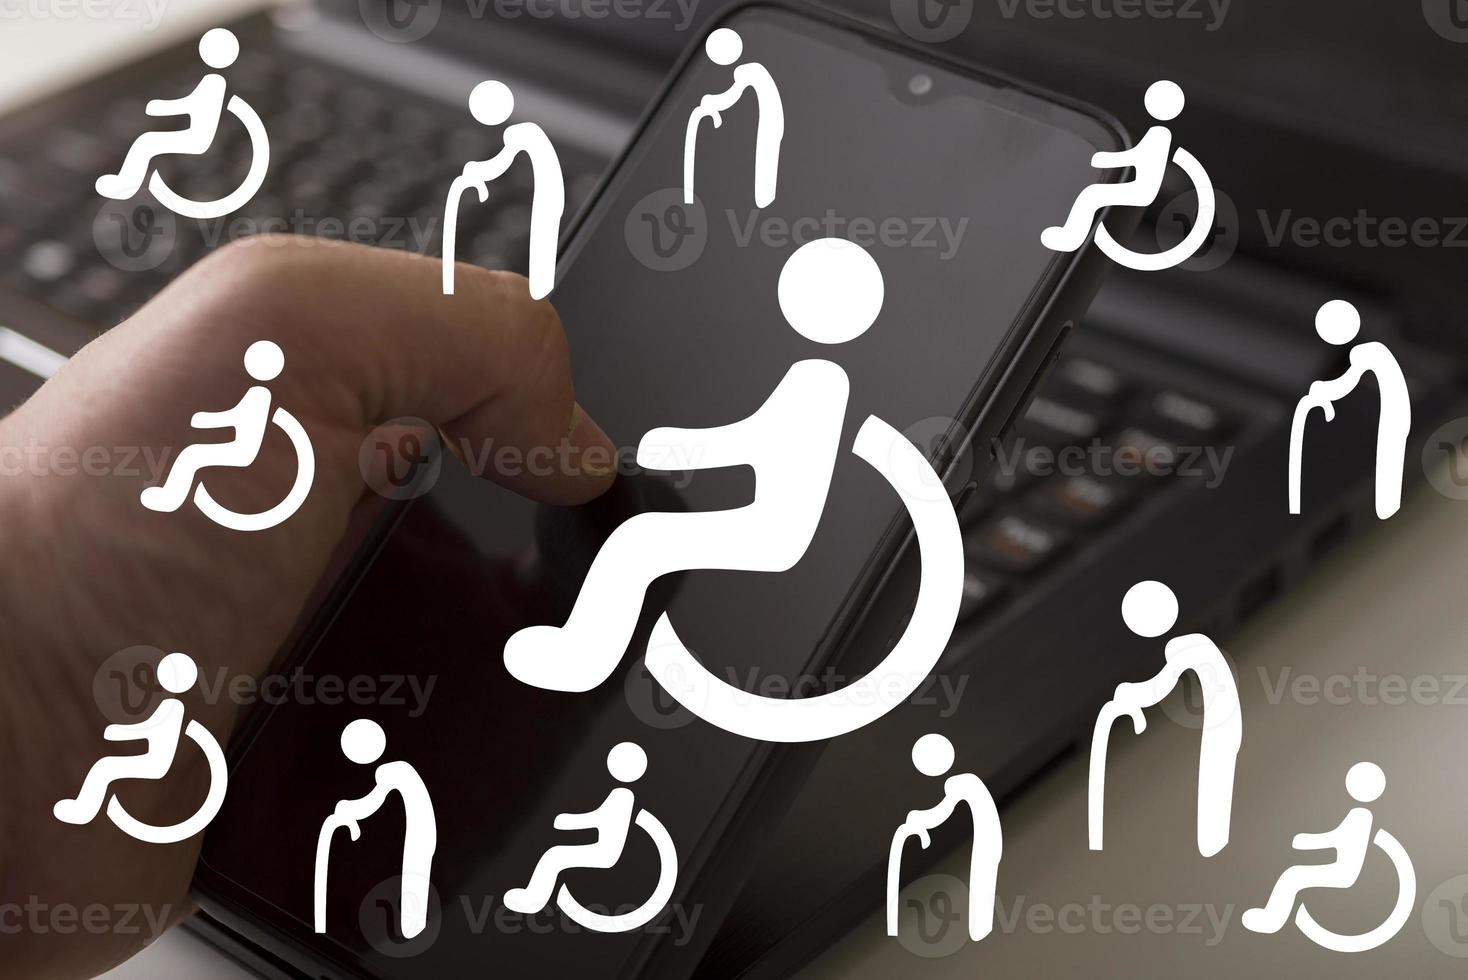 inaktiverade ikoner på datorbakgrunden. hjälp till funktionshindrade. foto